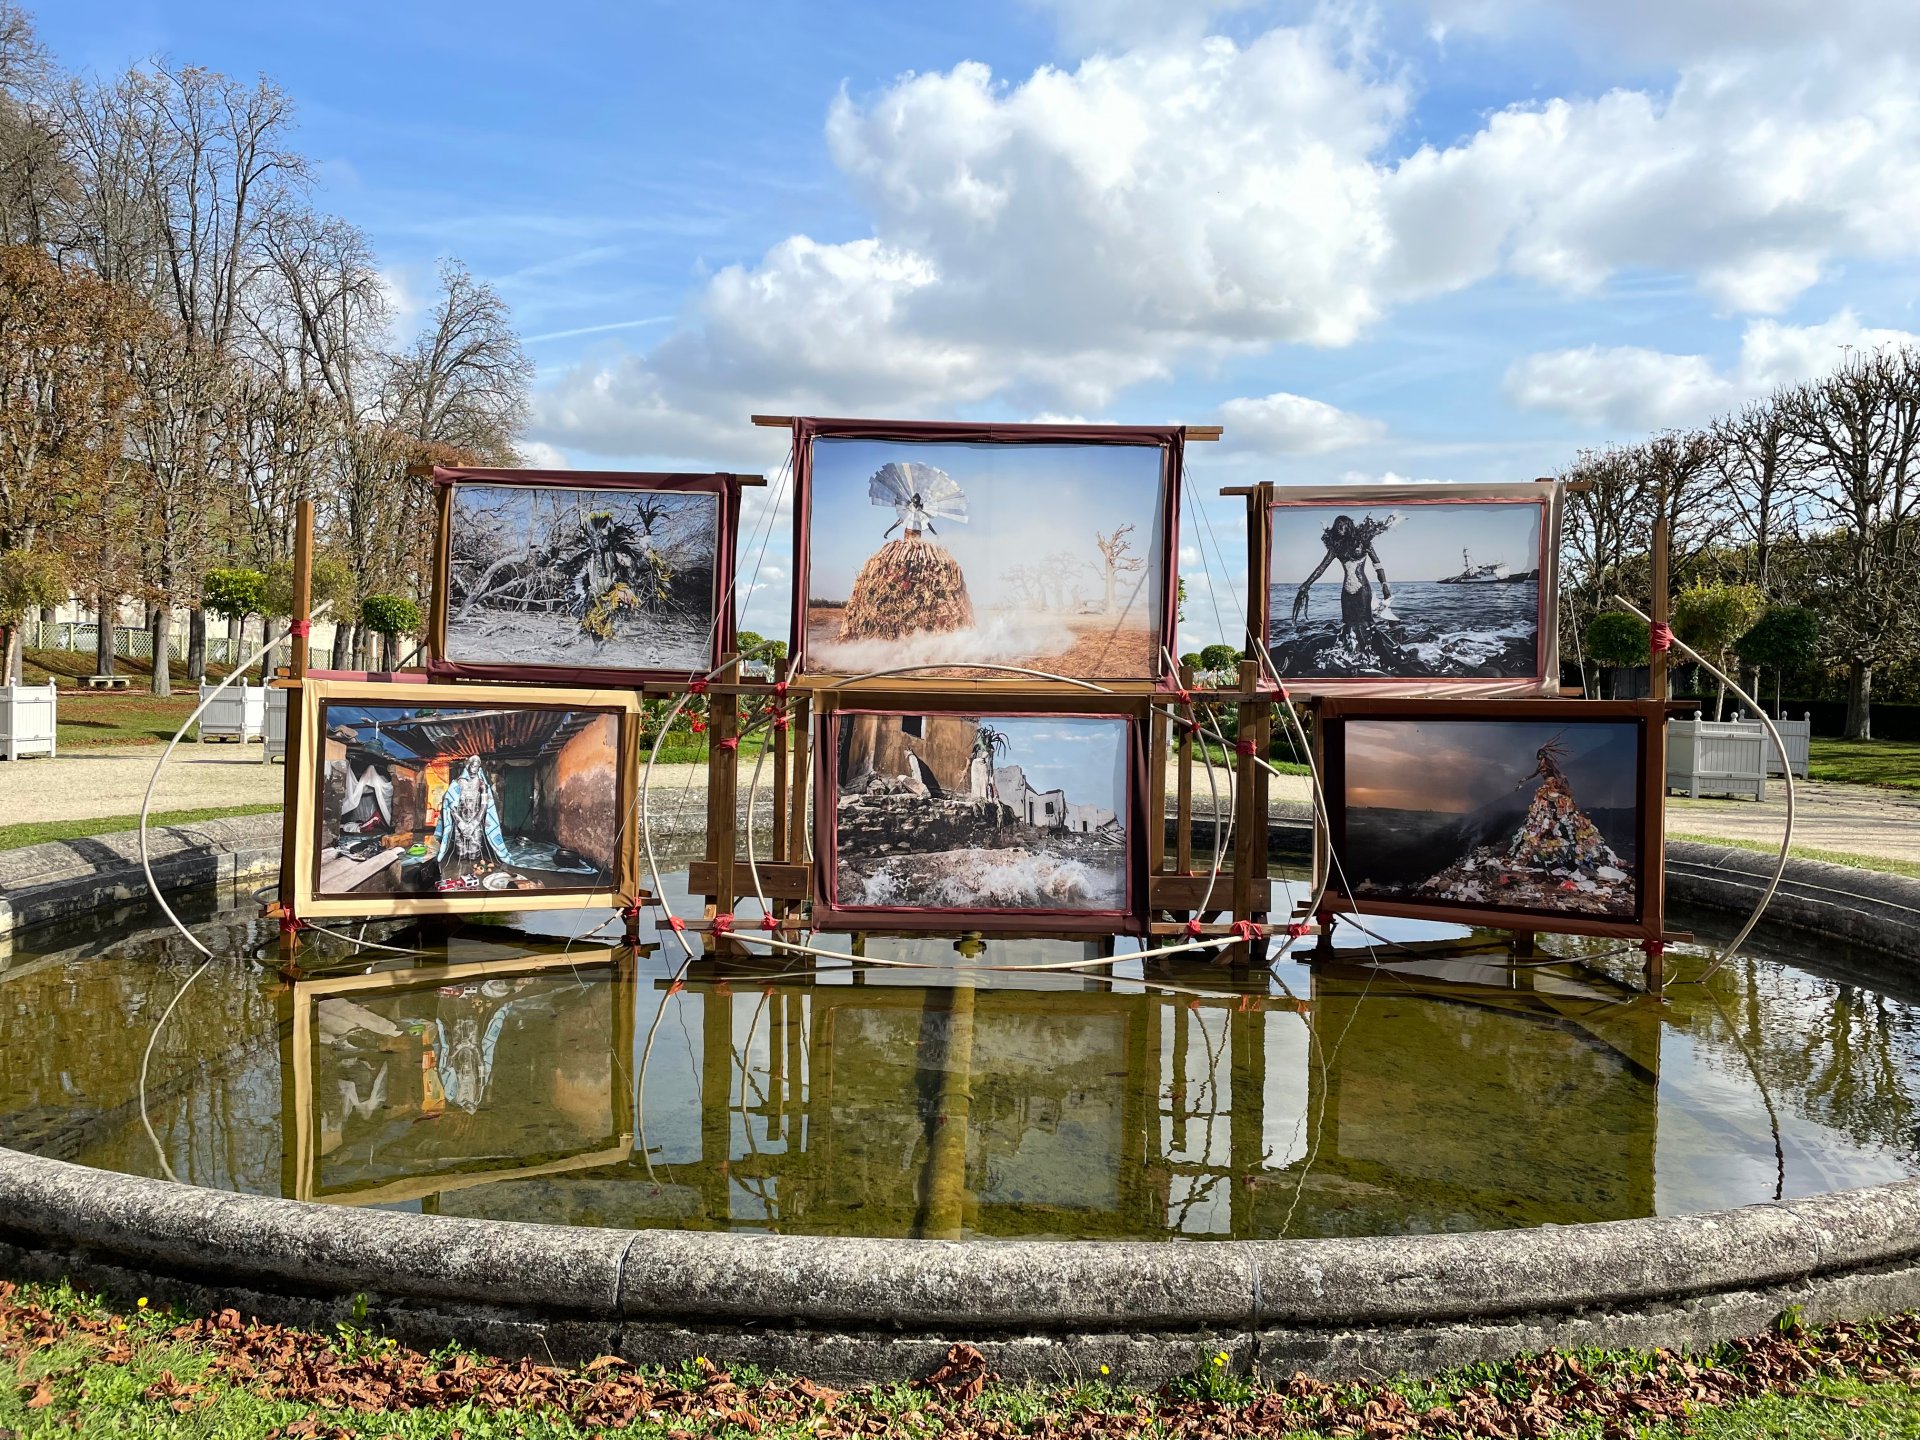 l'artiste Fabrice Monteiro. La structure, présentée dans le bassin de l'Orangerie sur les terrasses, donne à voir un regard engagé sur les problèmes environnementaux.